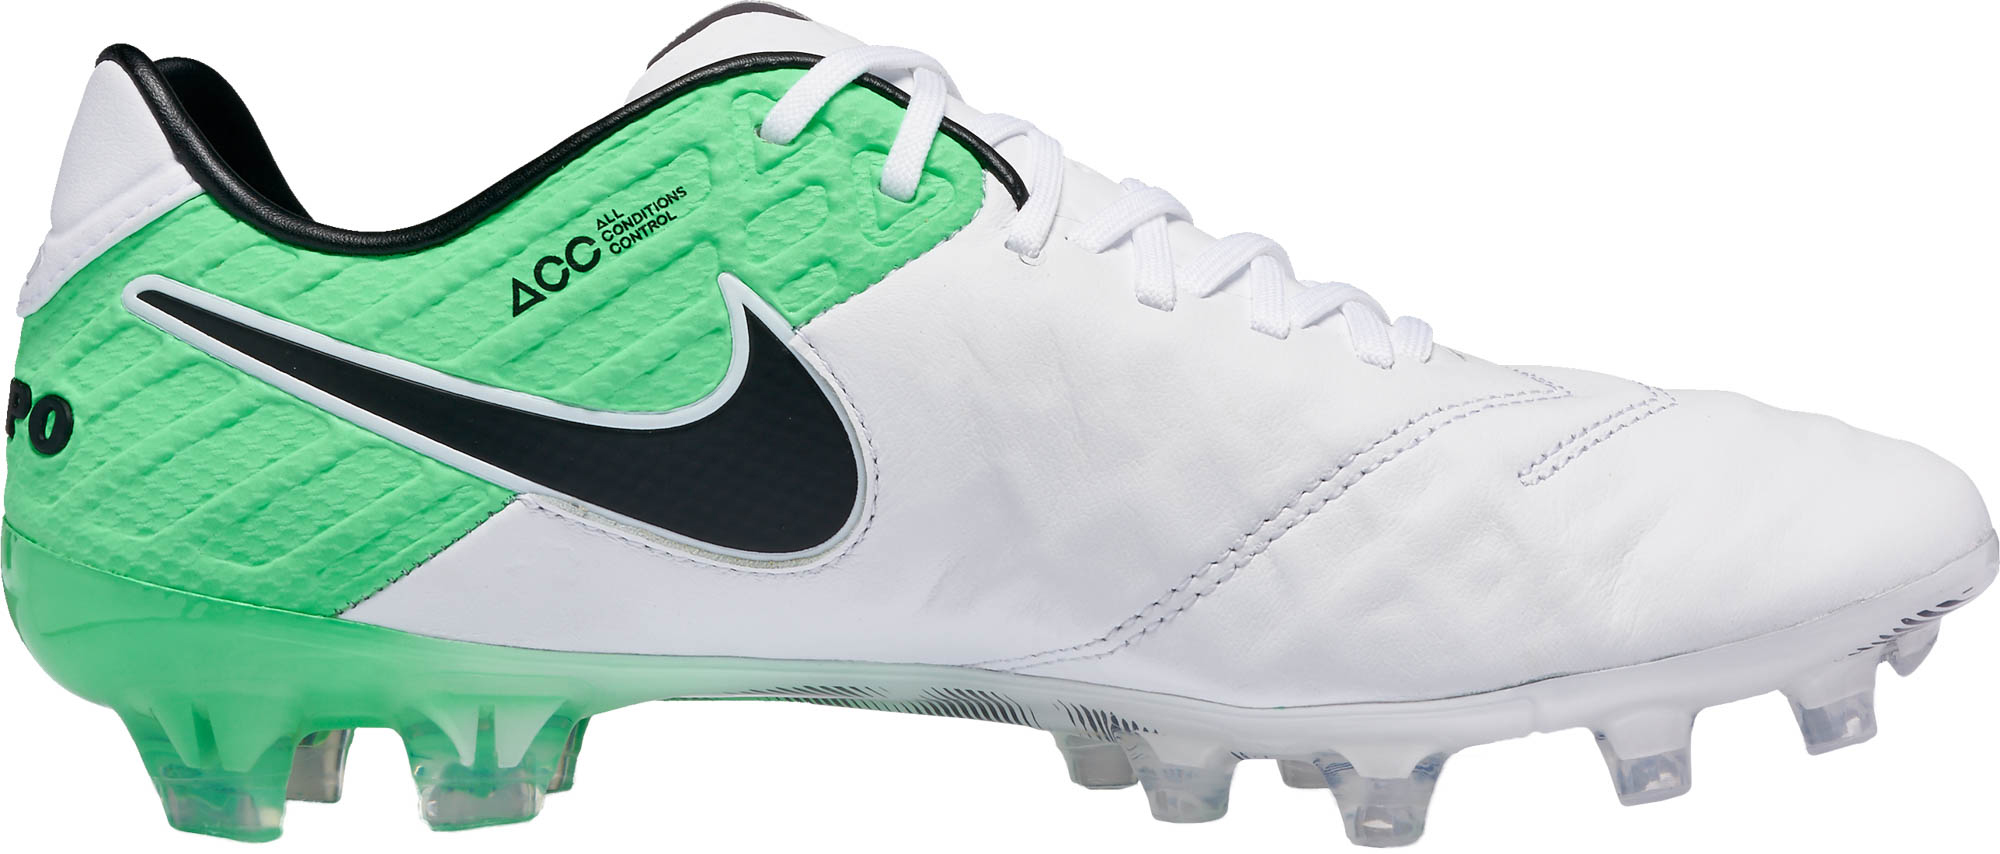 Nike VI FG - White Green Tiempo Legends